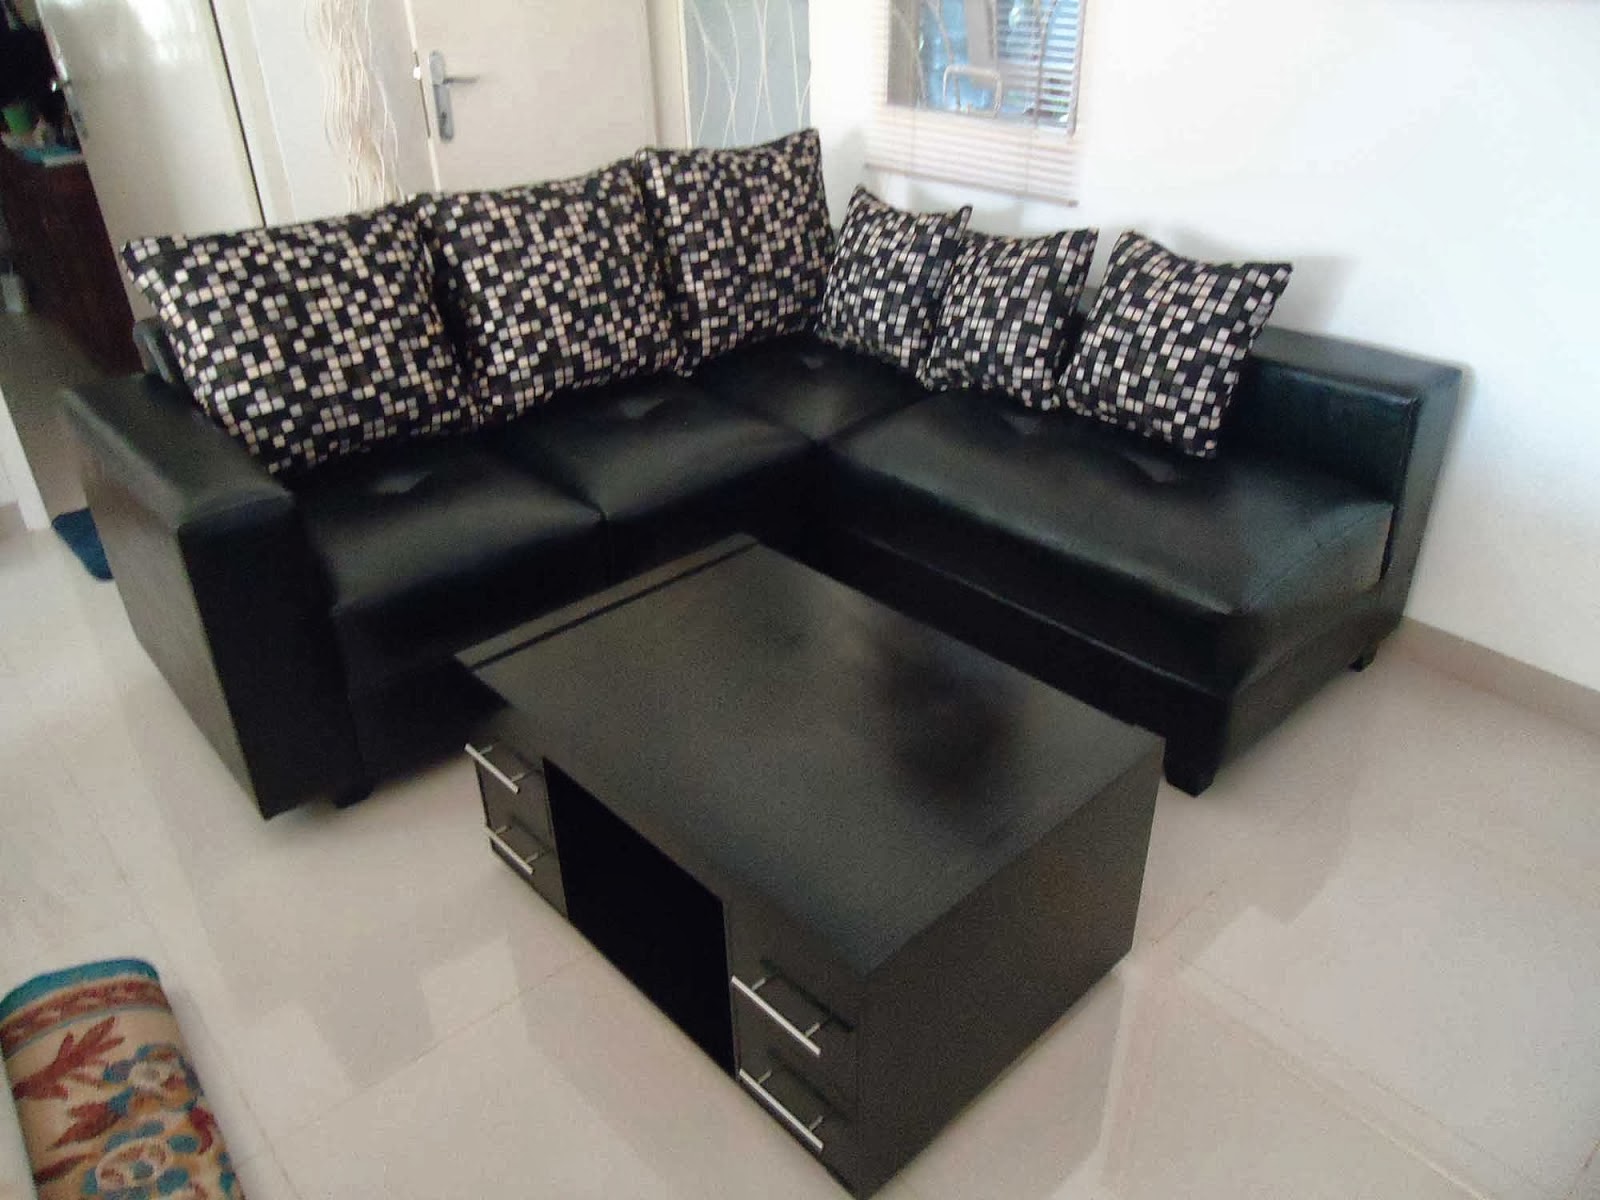  Sofa  Ruang Tamu Minimalis Tips Memilihnya